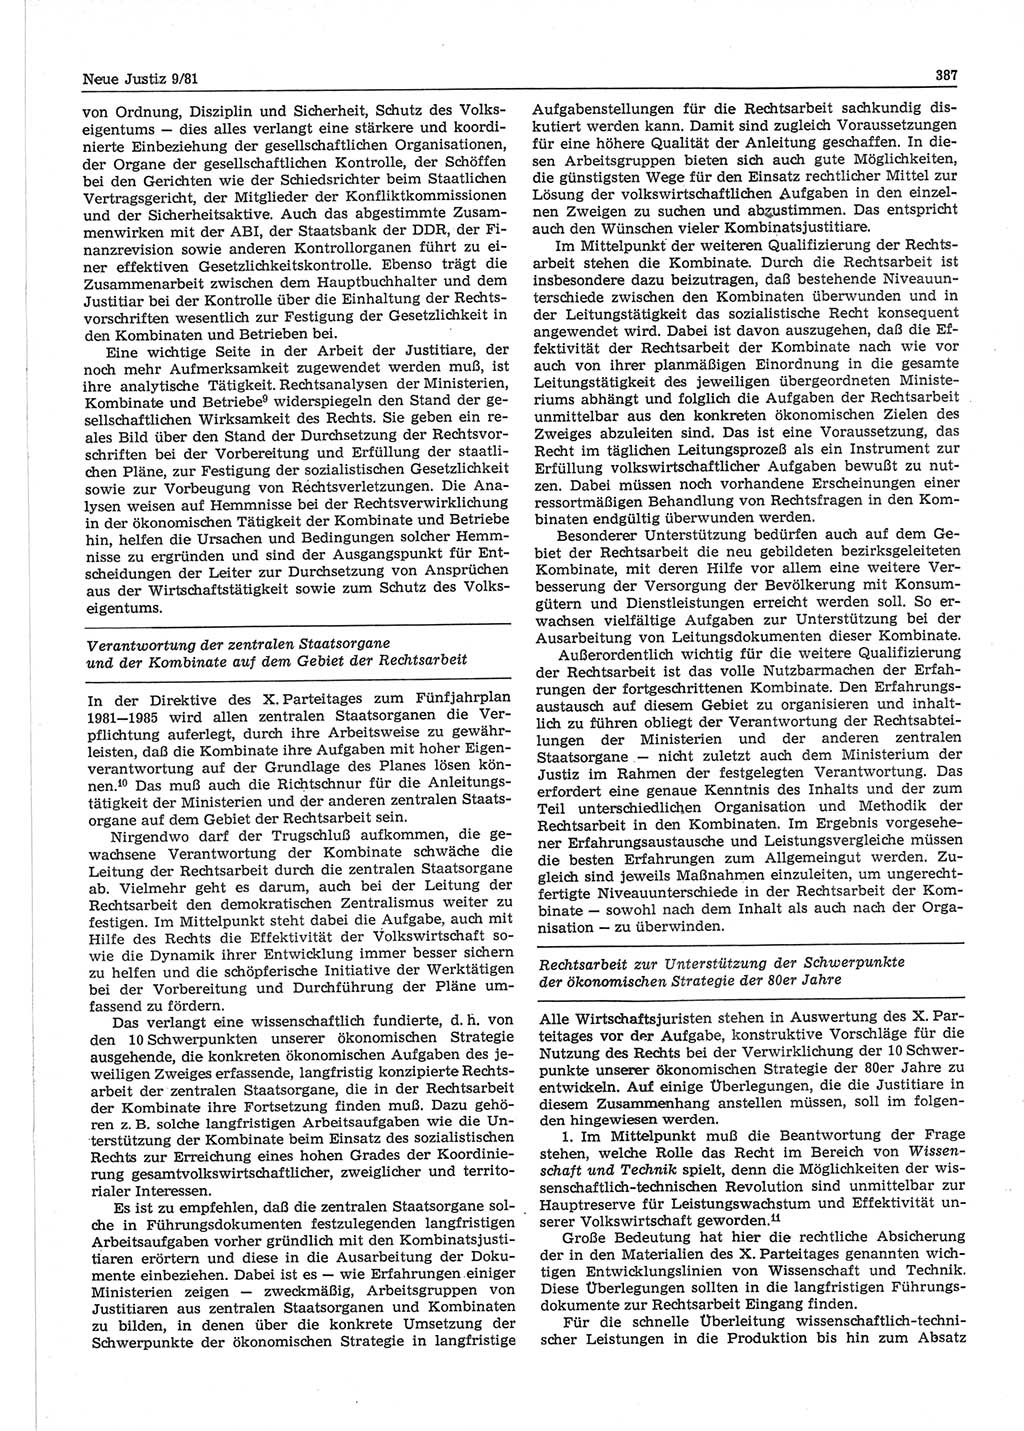 Neue Justiz (NJ), Zeitschrift für sozialistisches Recht und Gesetzlichkeit [Deutsche Demokratische Republik (DDR)], 35. Jahrgang 1981, Seite 387 (NJ DDR 1981, S. 387)